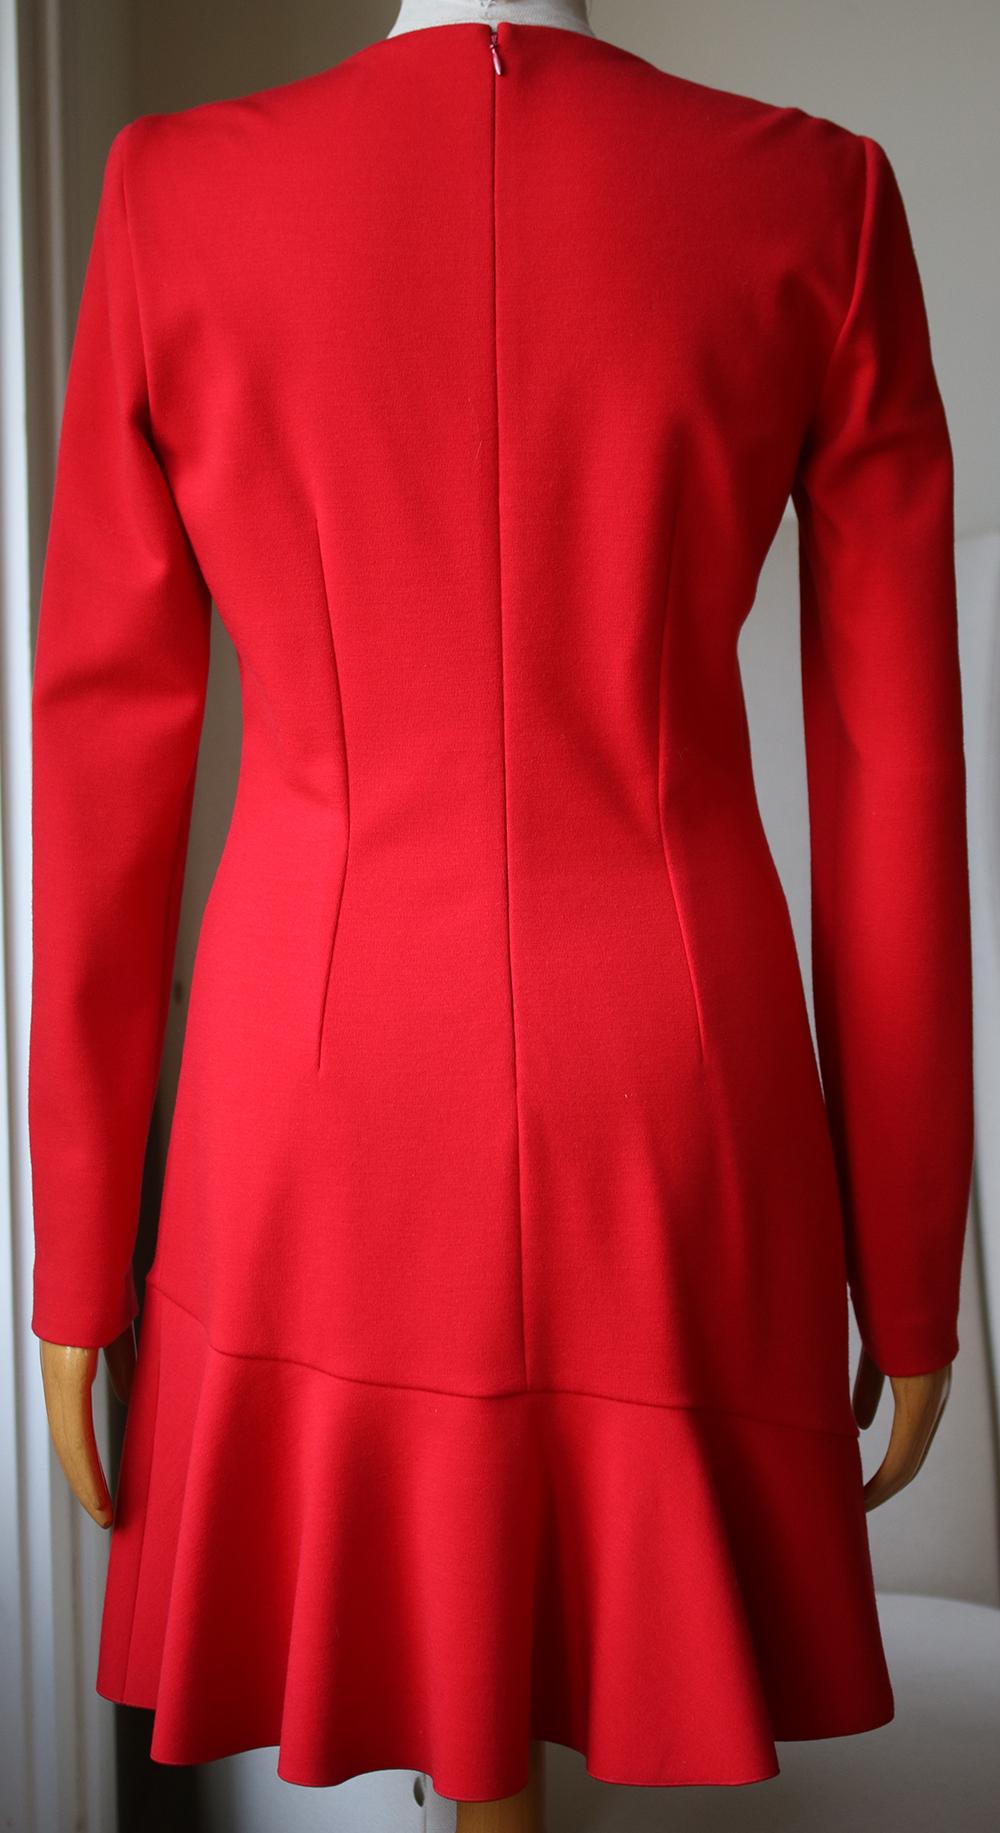 Red Alexander McQueen Long-Sleeve Frill Dress